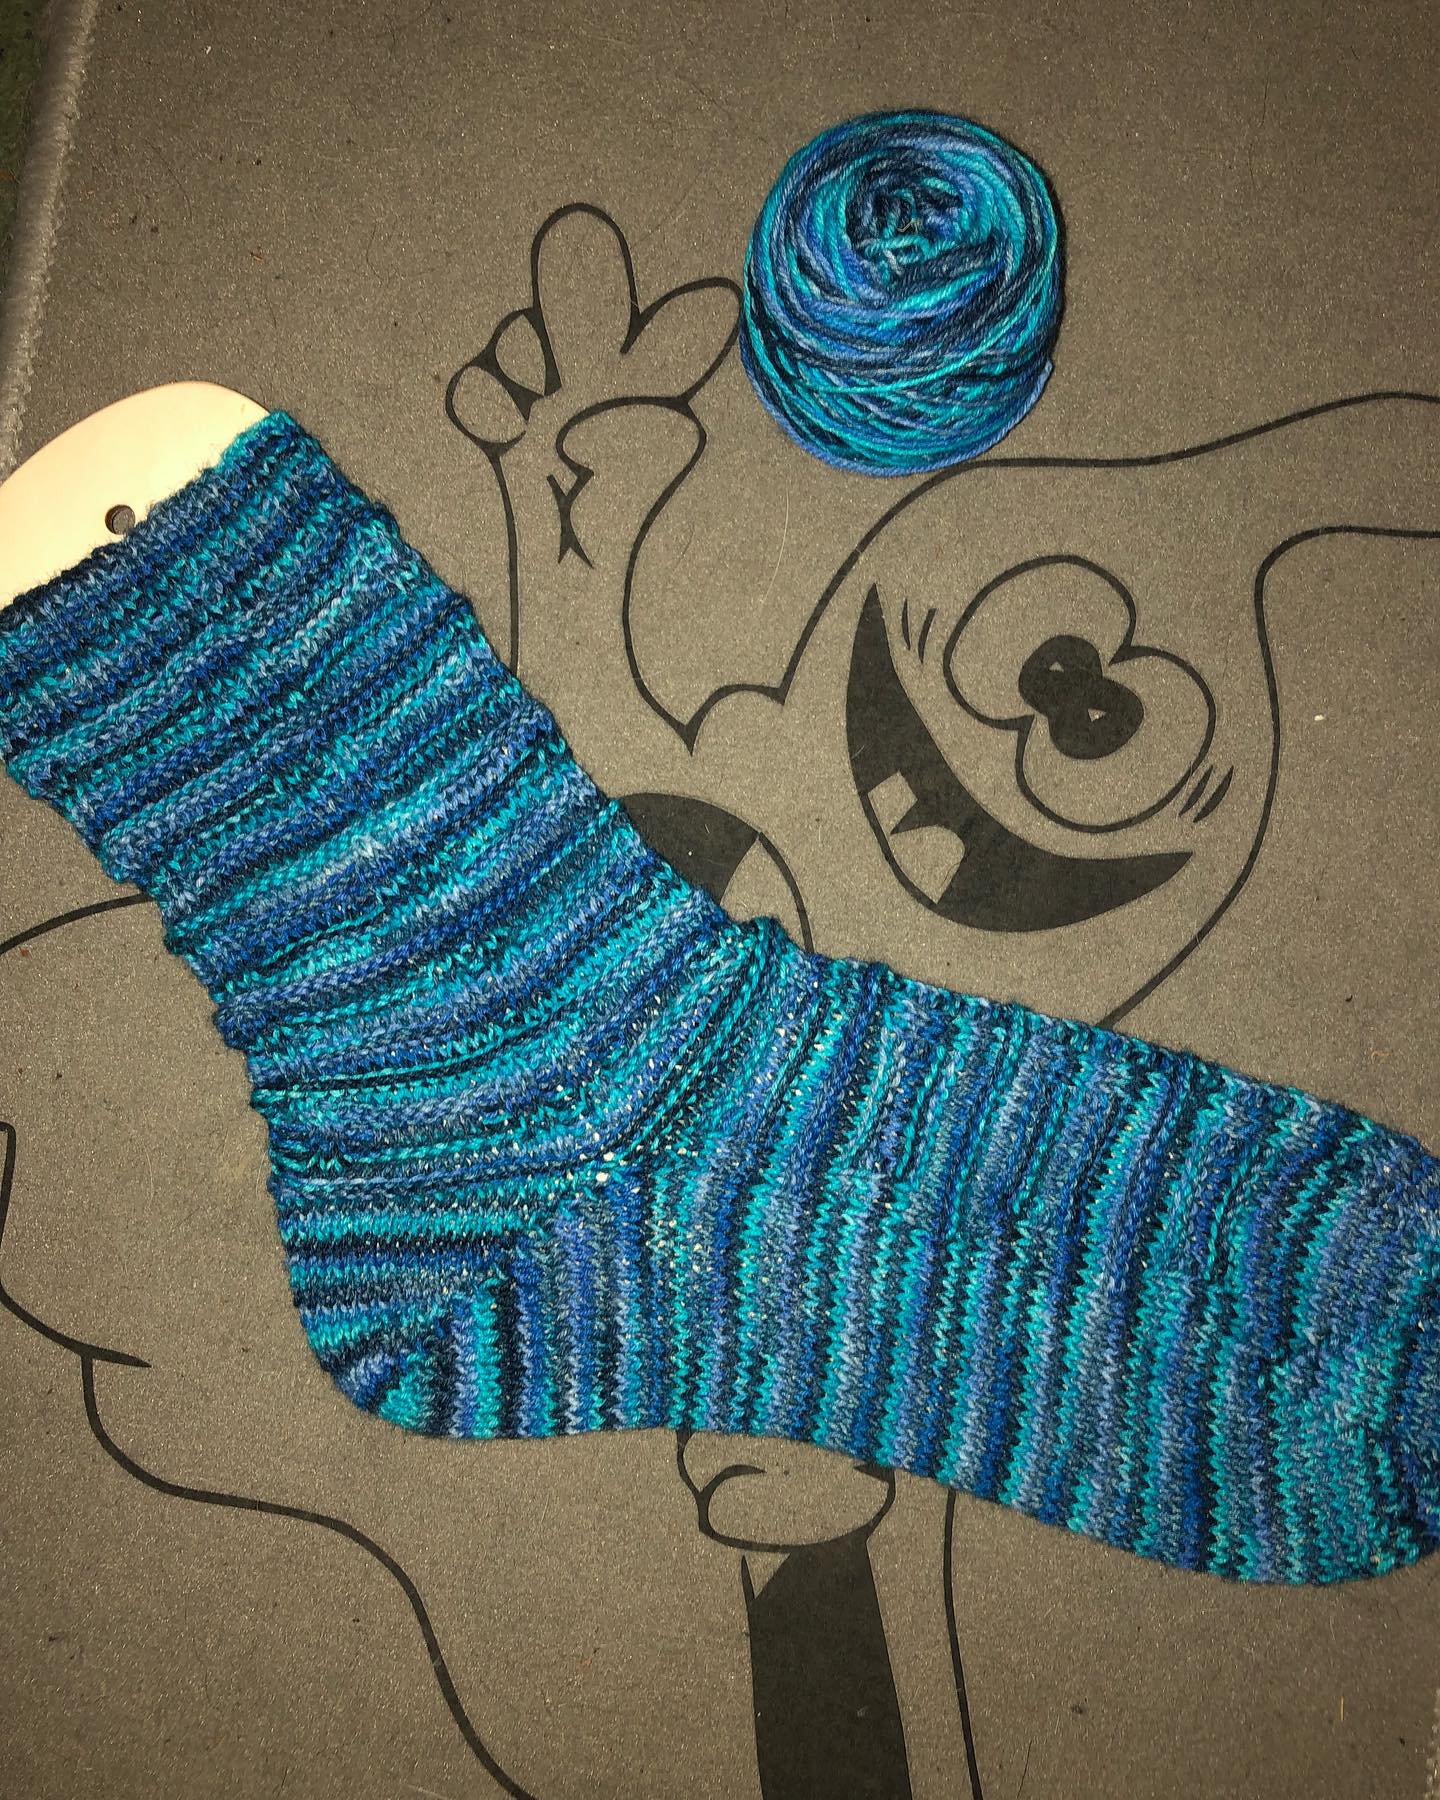 Da strick ich voll motiviert vor mich und notiere mir das Muster mit dem  ich da experimentiere und merke bei all dem gar nicht dass das Garn nicht reicht für ein paar🙈 offenbar hab ich damit schon mal was gestrickt und es vergessen 😱 
Tja jetzt bekommt der Sekretär🐻 mal wieder ein paar aus 2 verschiedenen Farben 😂 
Passiert sowas eigentlich nur mir ?🤔
#knitting #knittersofinstagram #knittinglove #knittingsocks #knittingsocksoninstagram #wool #handgefärbtewolle #stricken #socken #socks #menden #sauerland #warmefüße #strickenmachtglücklich #strickliebe #sockenstricken #sockenstrickengehtimmer #sockenstrickenmachtspass